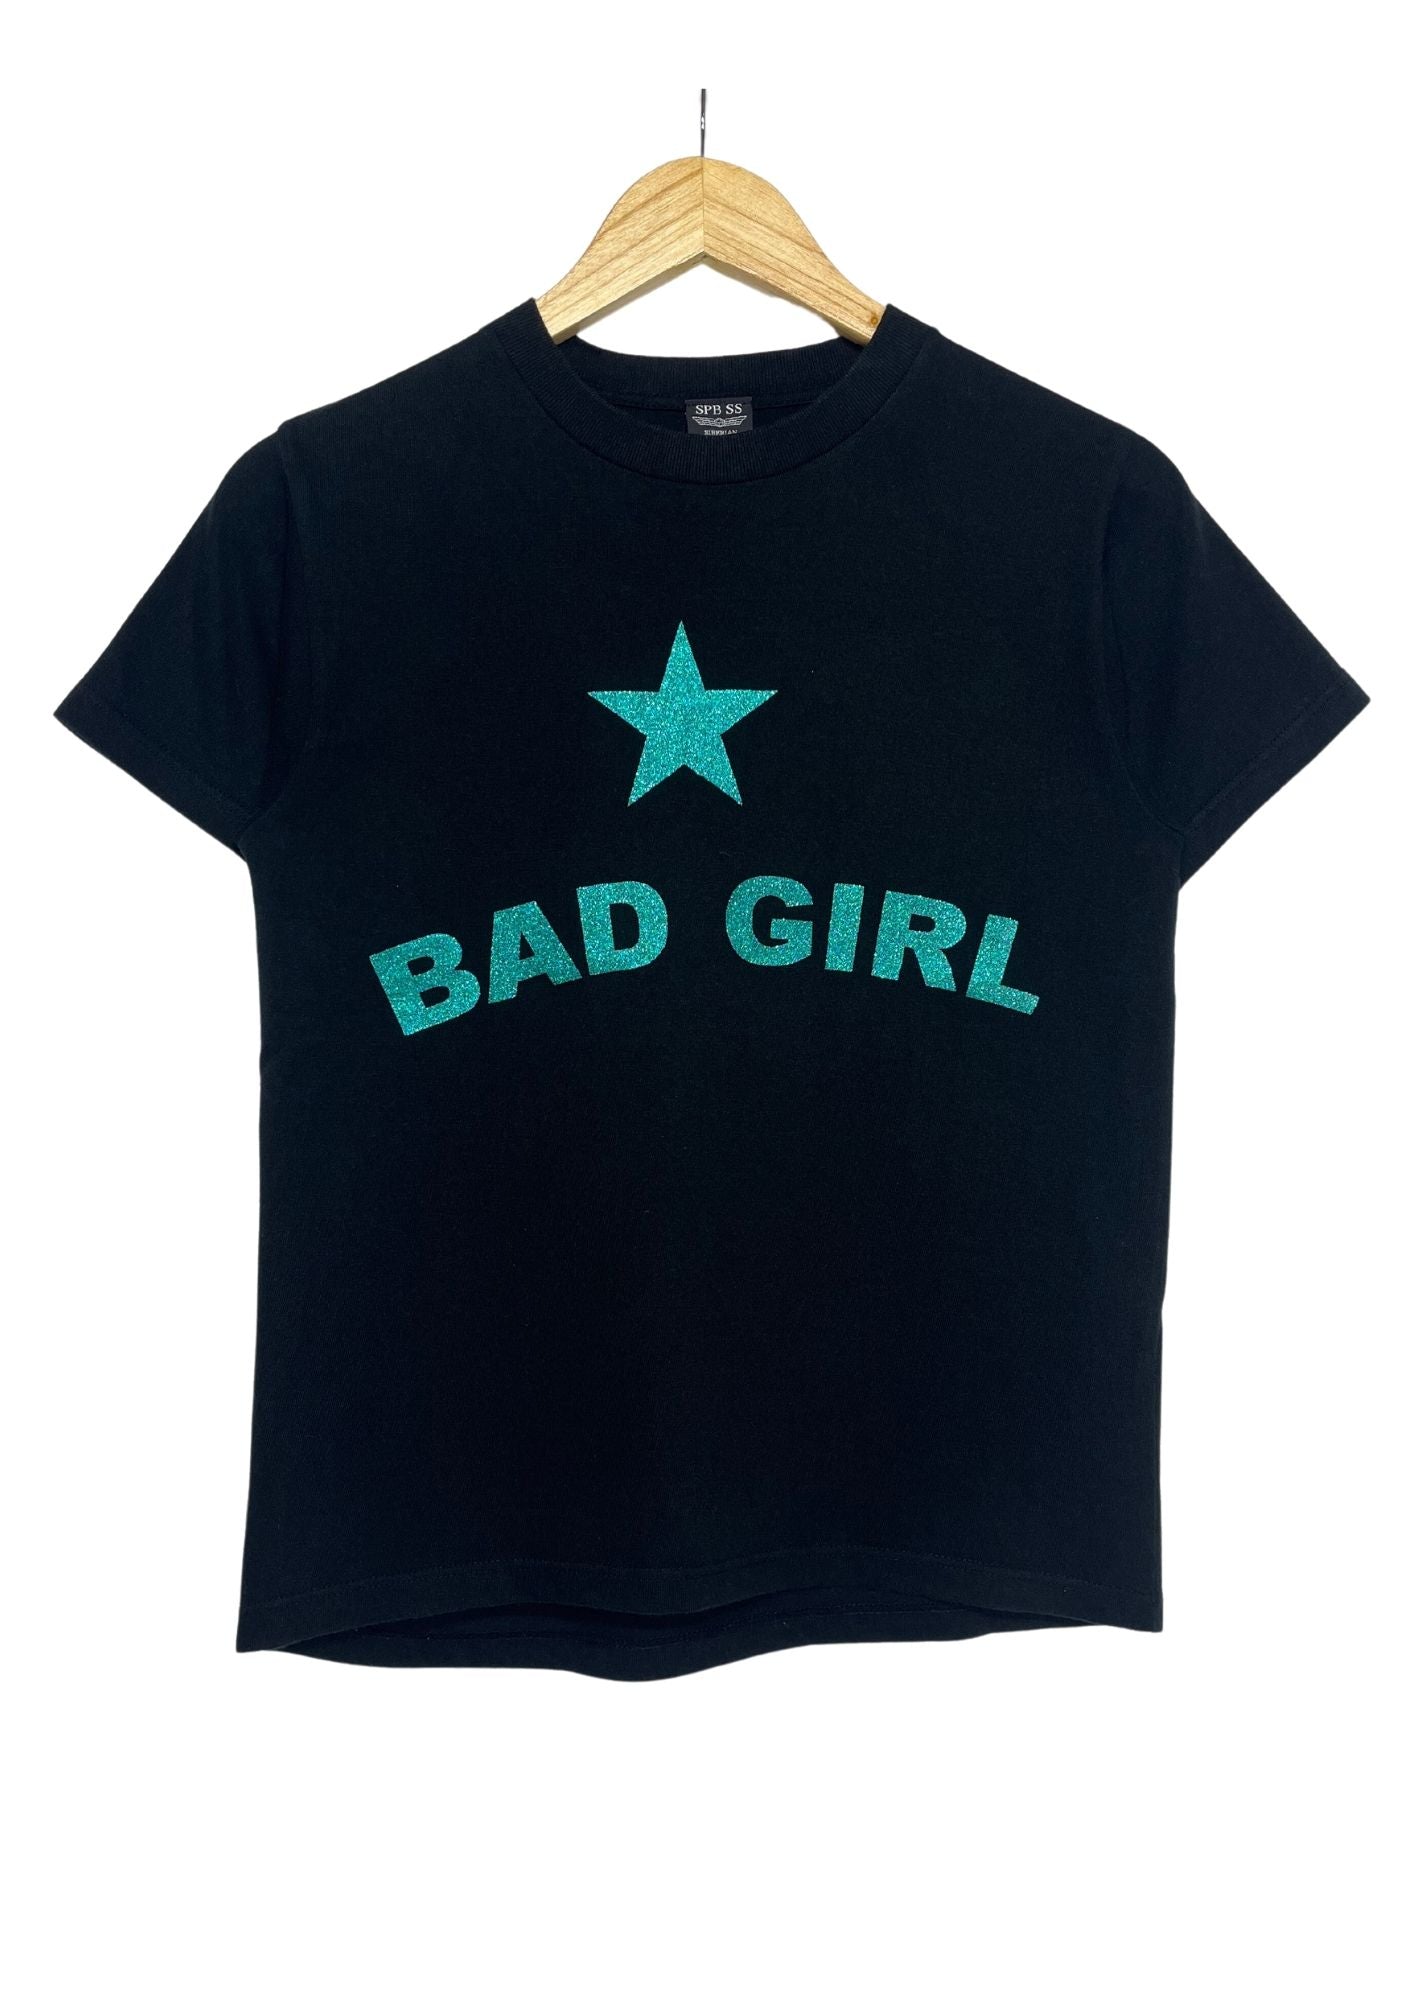 2005 JUDE Kenichi Asai 'Bad Girl' Japanese Band T-shirt